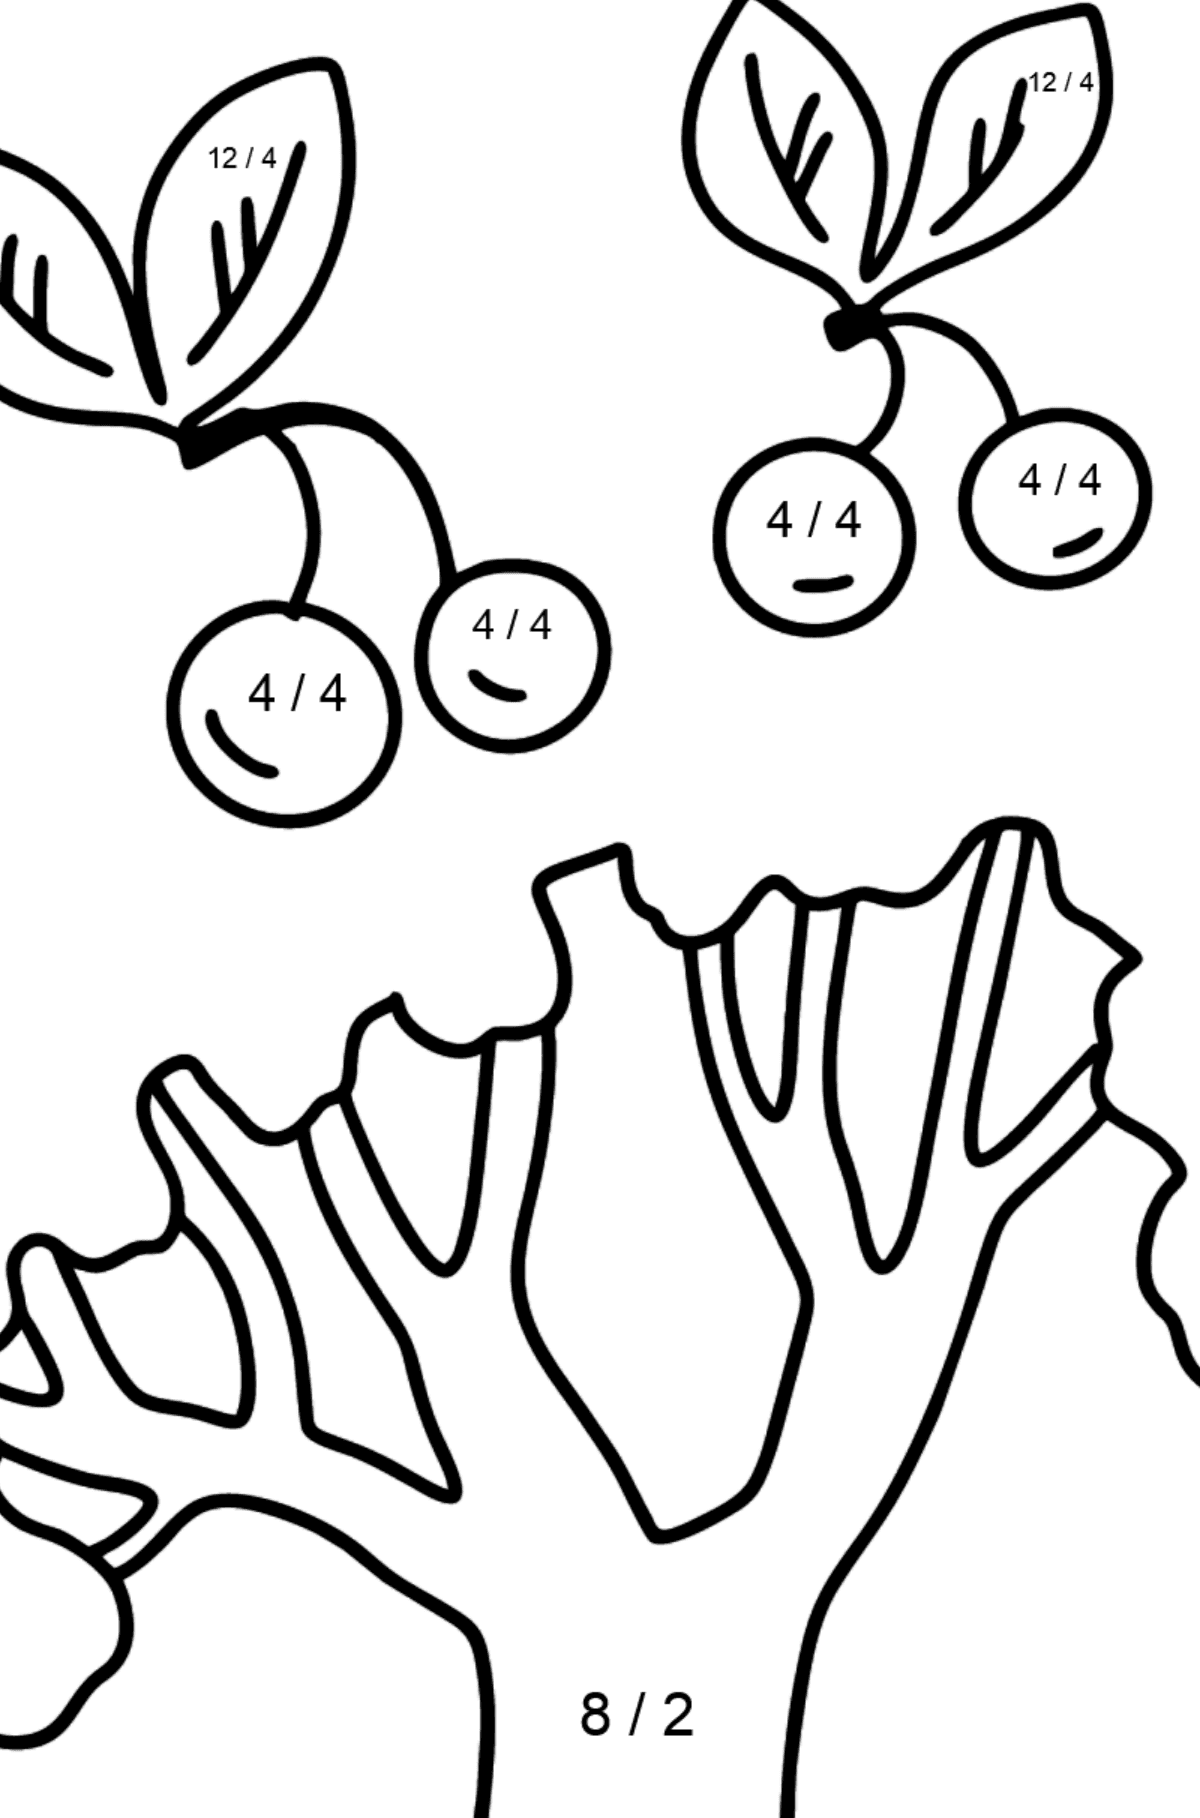 Mewarnai gambar pohon ceri - Pewarnaan Matematika: Pembagian untuk anak-anak